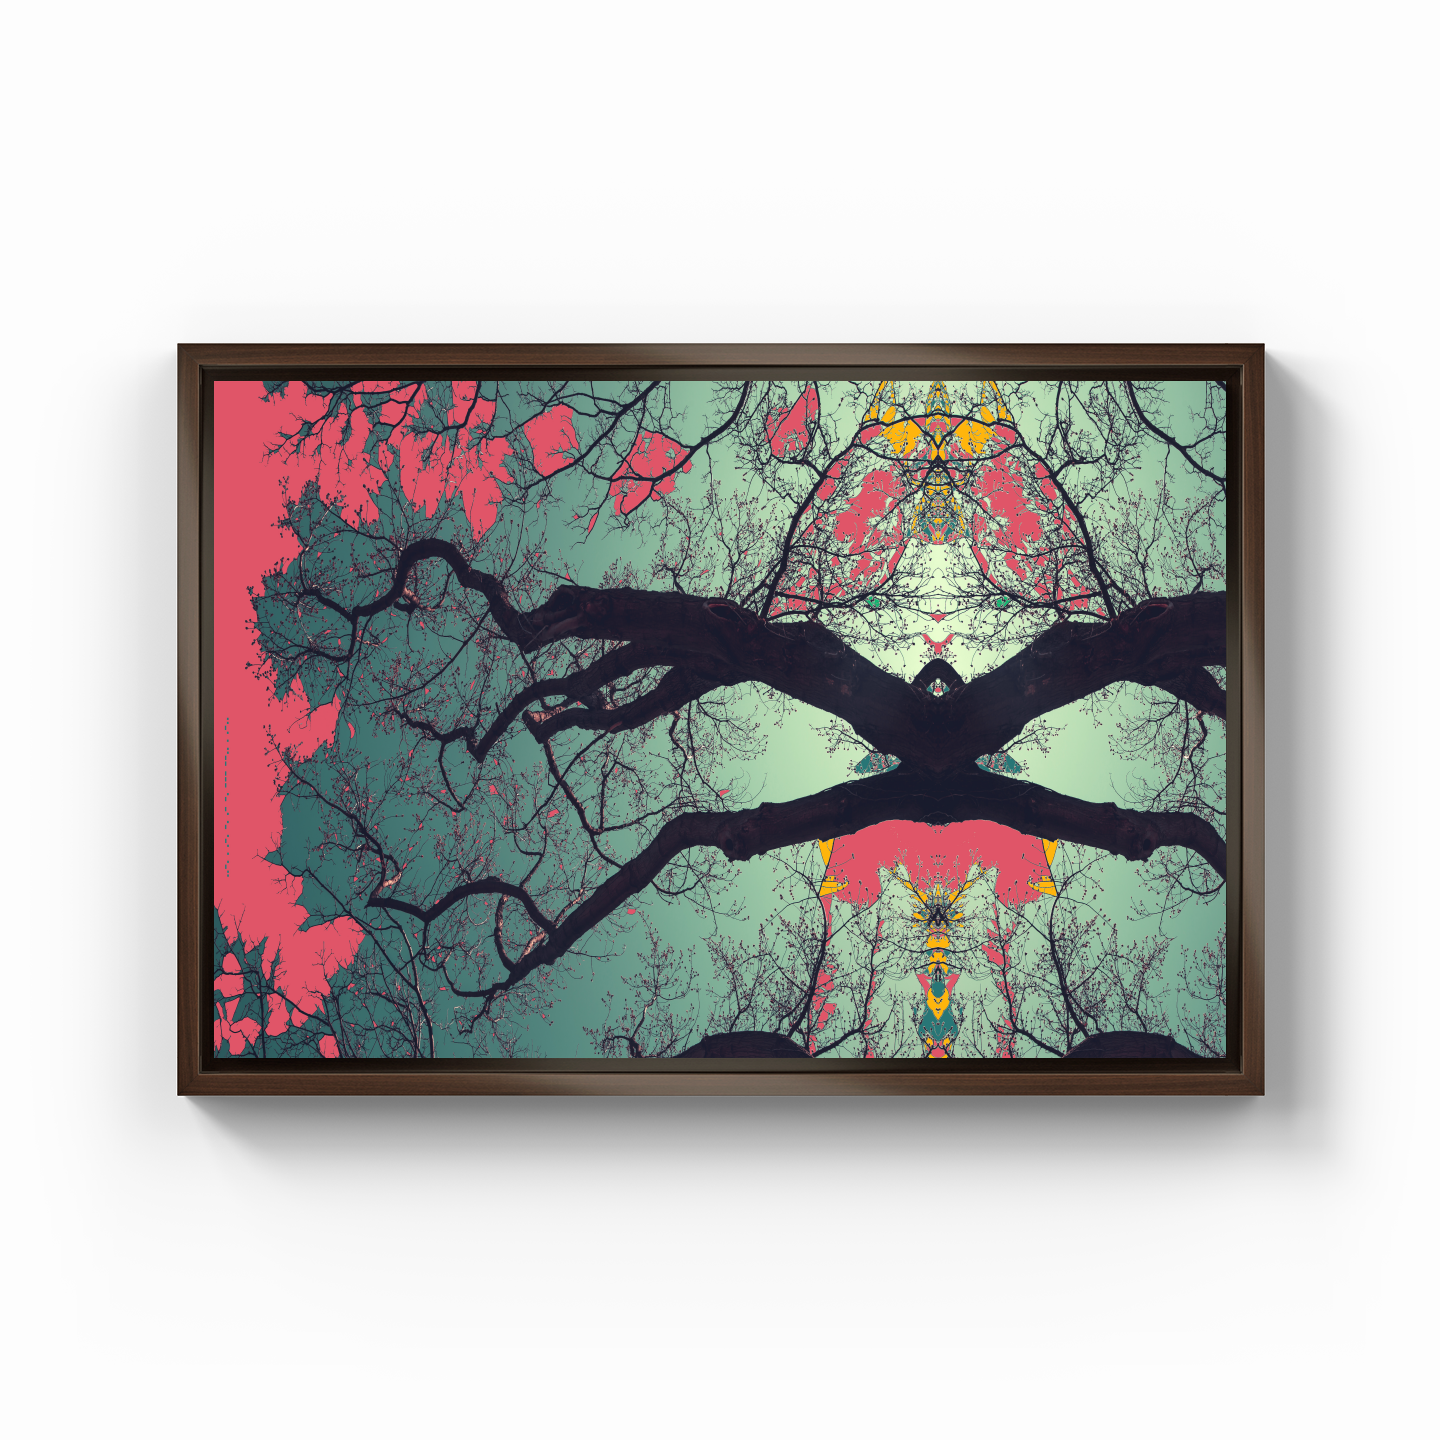 Simetri Ağaç Dal Orman Ekspresyonist Abstrakt Manzara No 04 - Kanvas Tablo